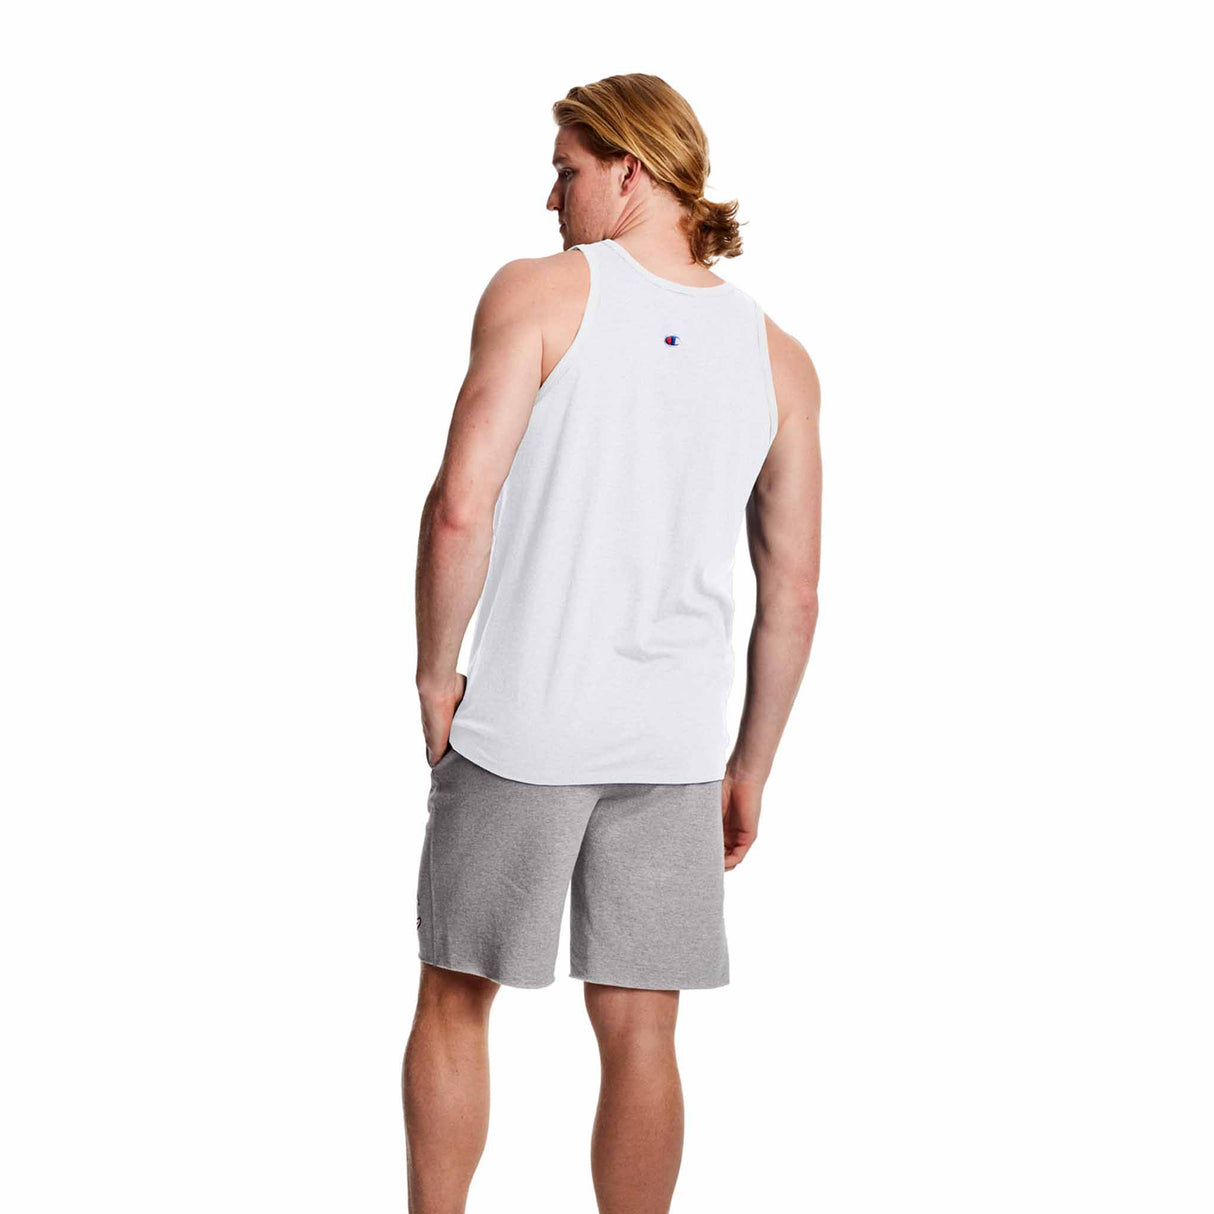 Champion Classic Graphic Tank T-shirt sport sans manches pour homme blanc vue de dos